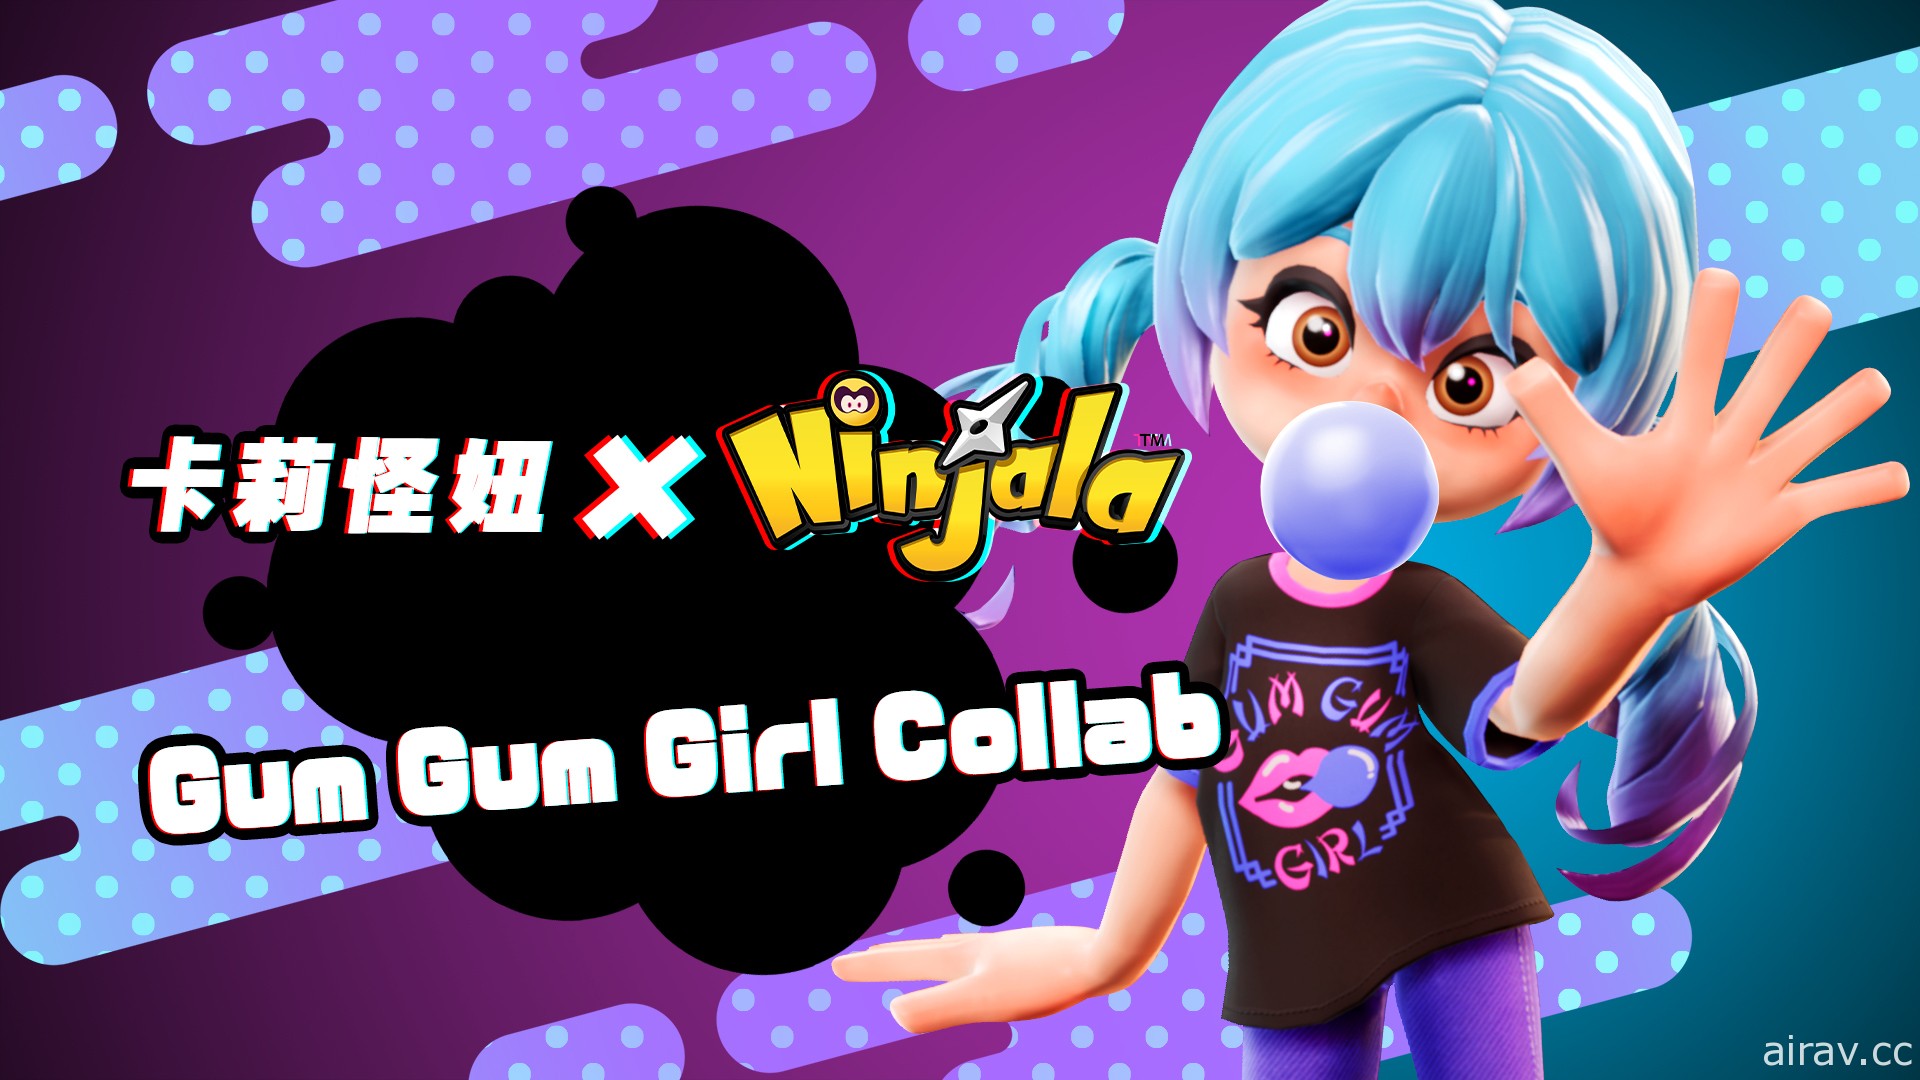 《Ninjala 泡泡糖忍战》推出卡莉怪妞新歌“泡泡糖女孩”联名活动